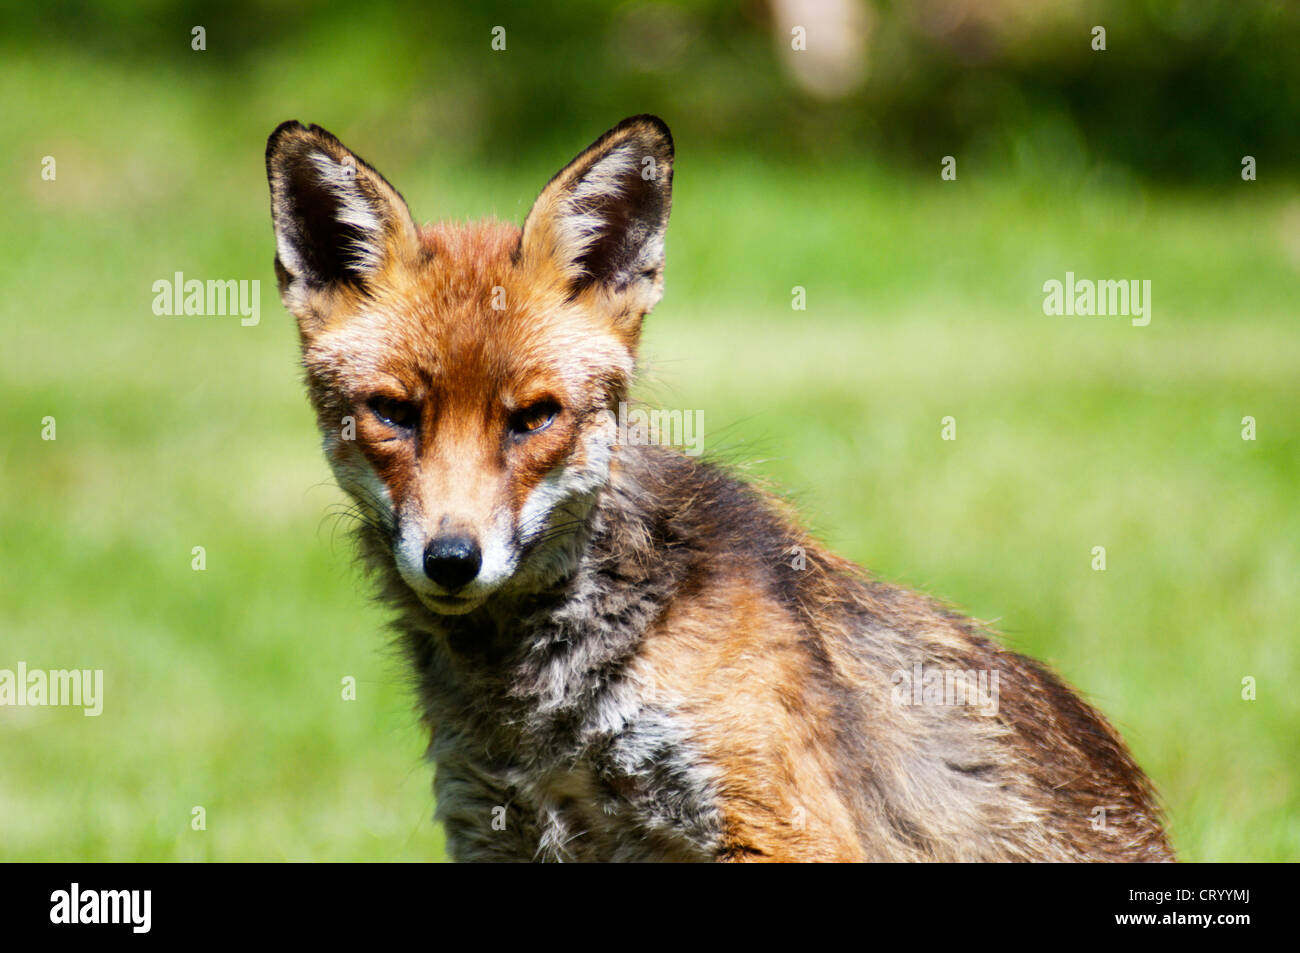 An urban fox in a South London garden. Stock Photo